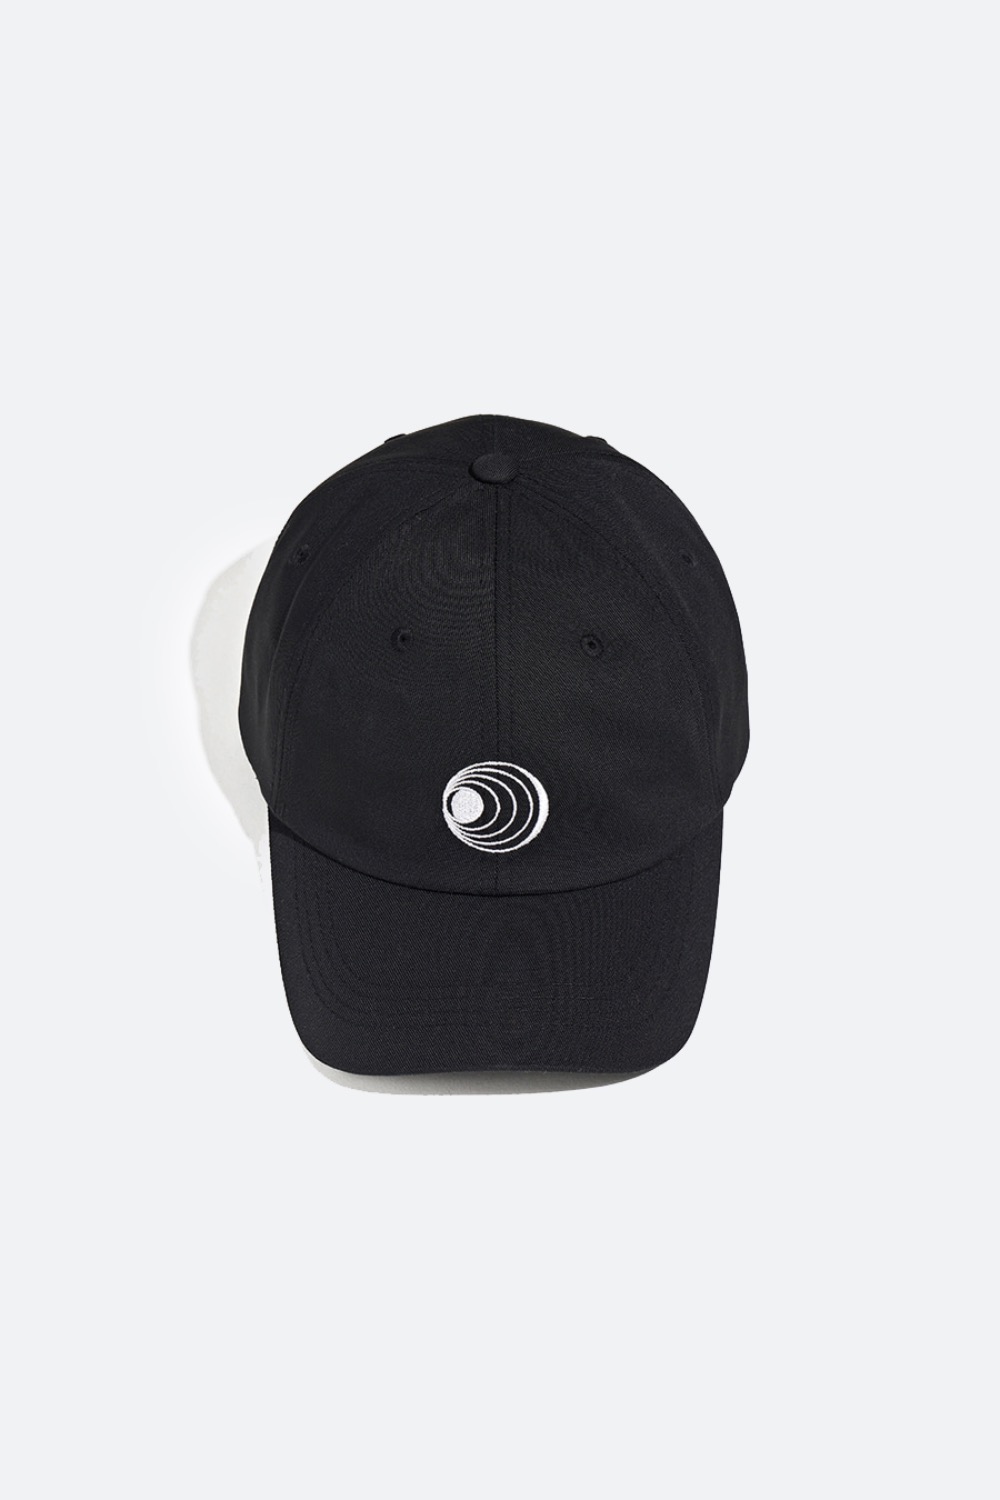 SYMBOL BALL CAP BLACK